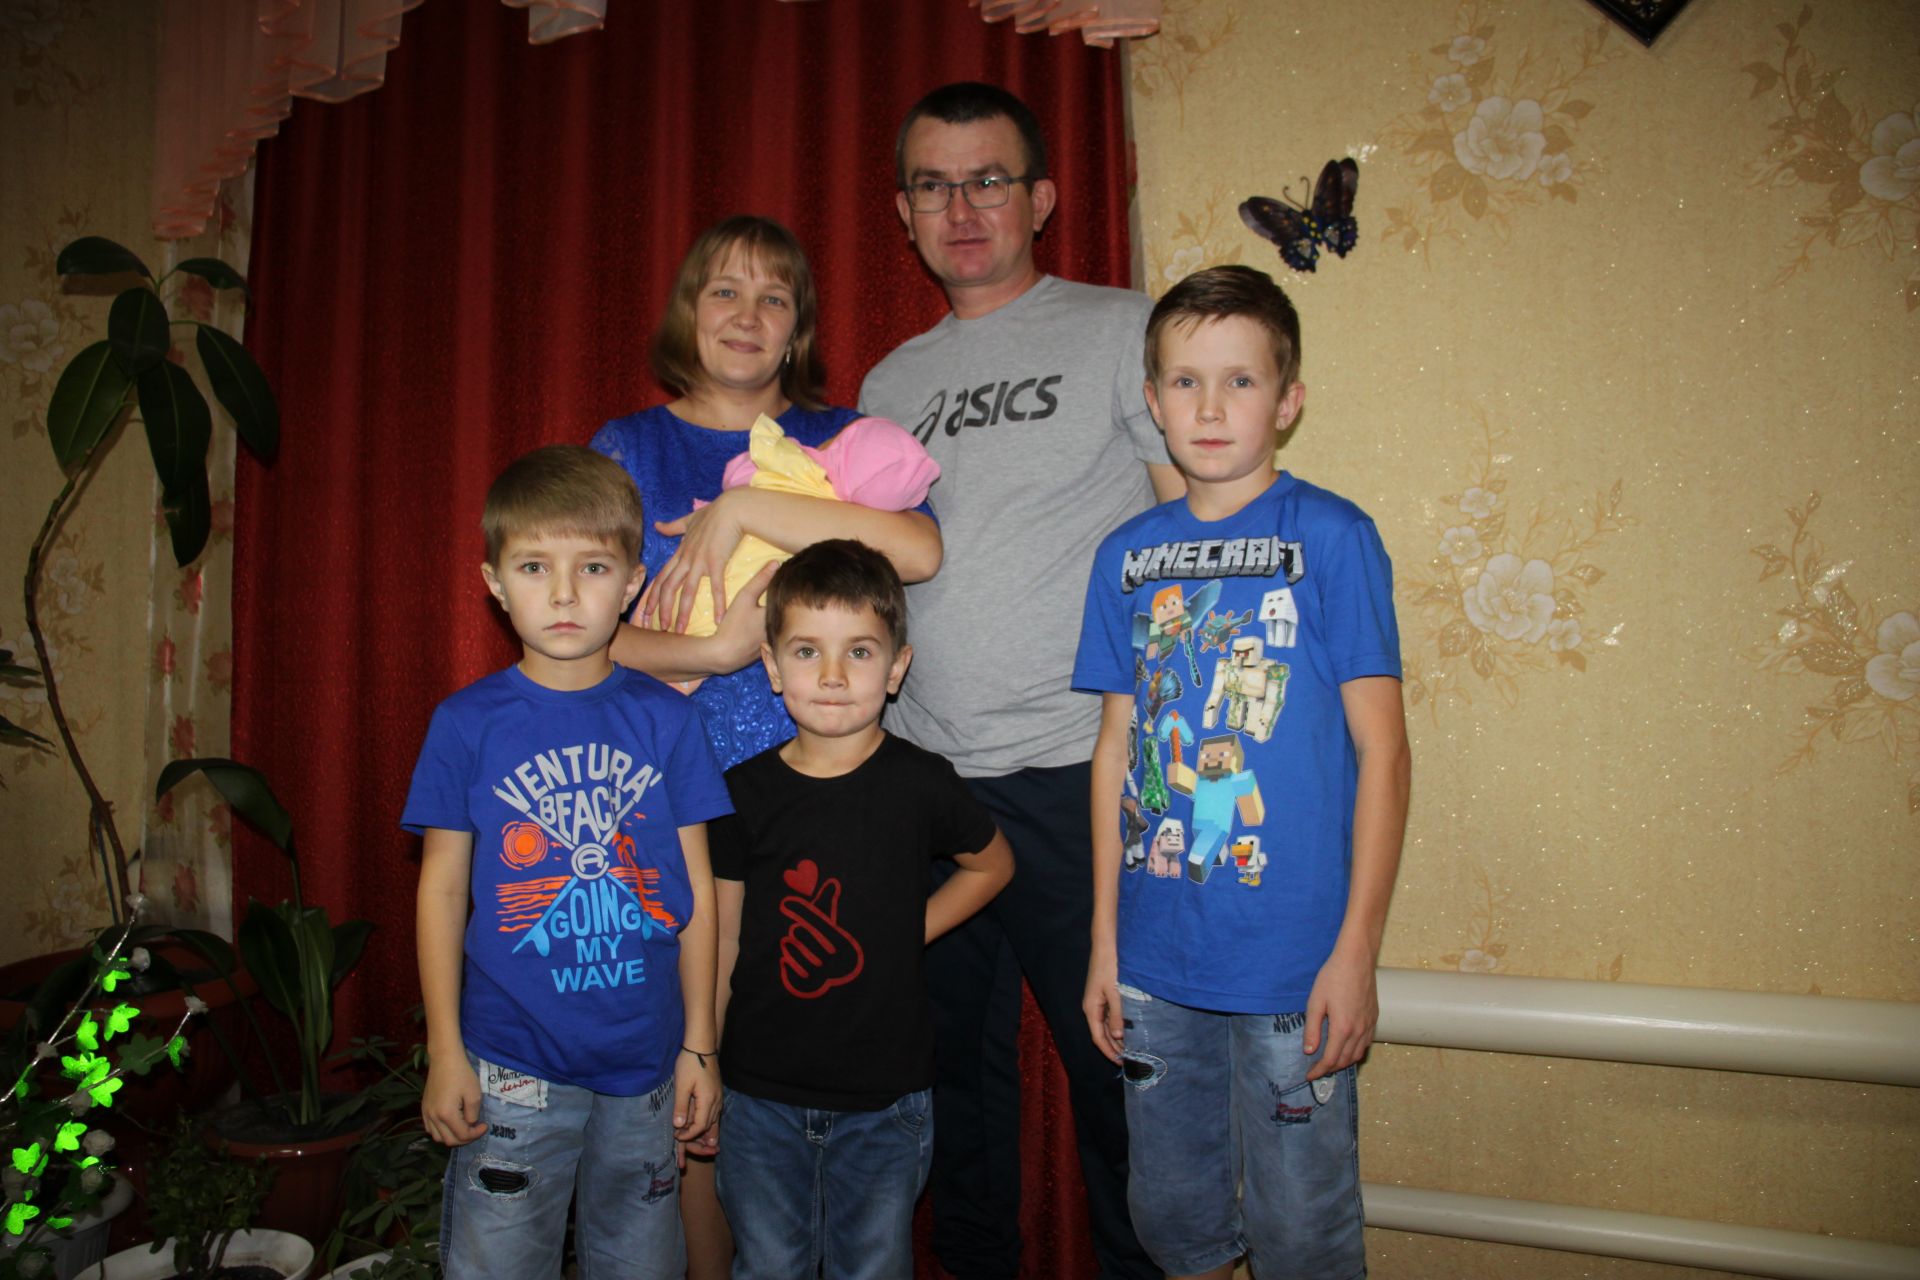 Алькеевский район: “Все четверо детей желанные, долгожданные”, – говорят Ильдар и Лейсан Гилязовы из села Ахметьево